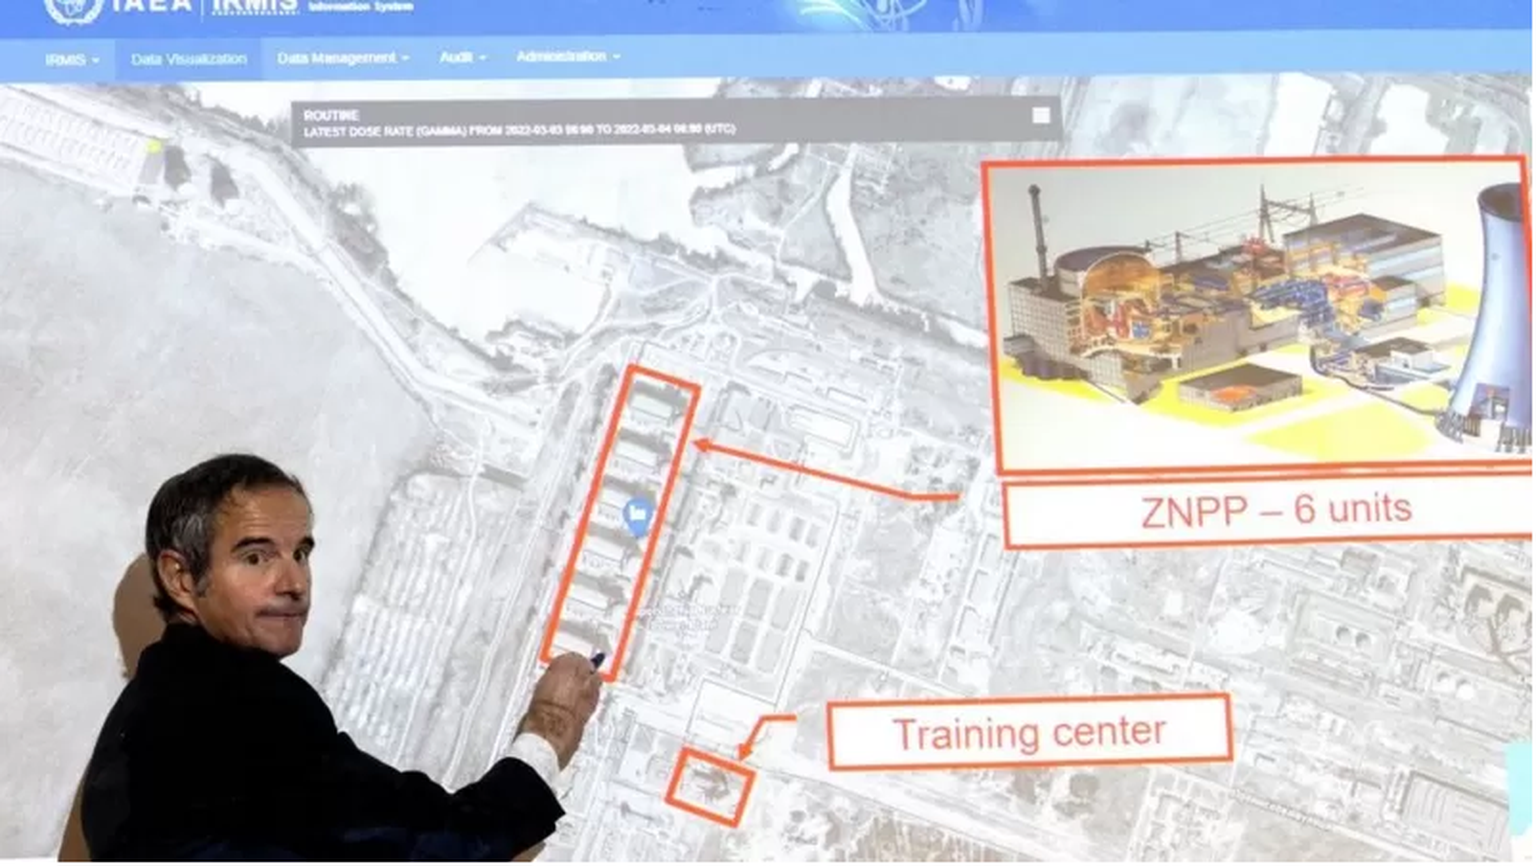 Глава МАГАТЭ Гросси в марте обращал внимание на то, что загоревшийся в результате обстрела учебно-тренировочный центр на АЭС находится совсем близко к энергоблокам - это видно на карте